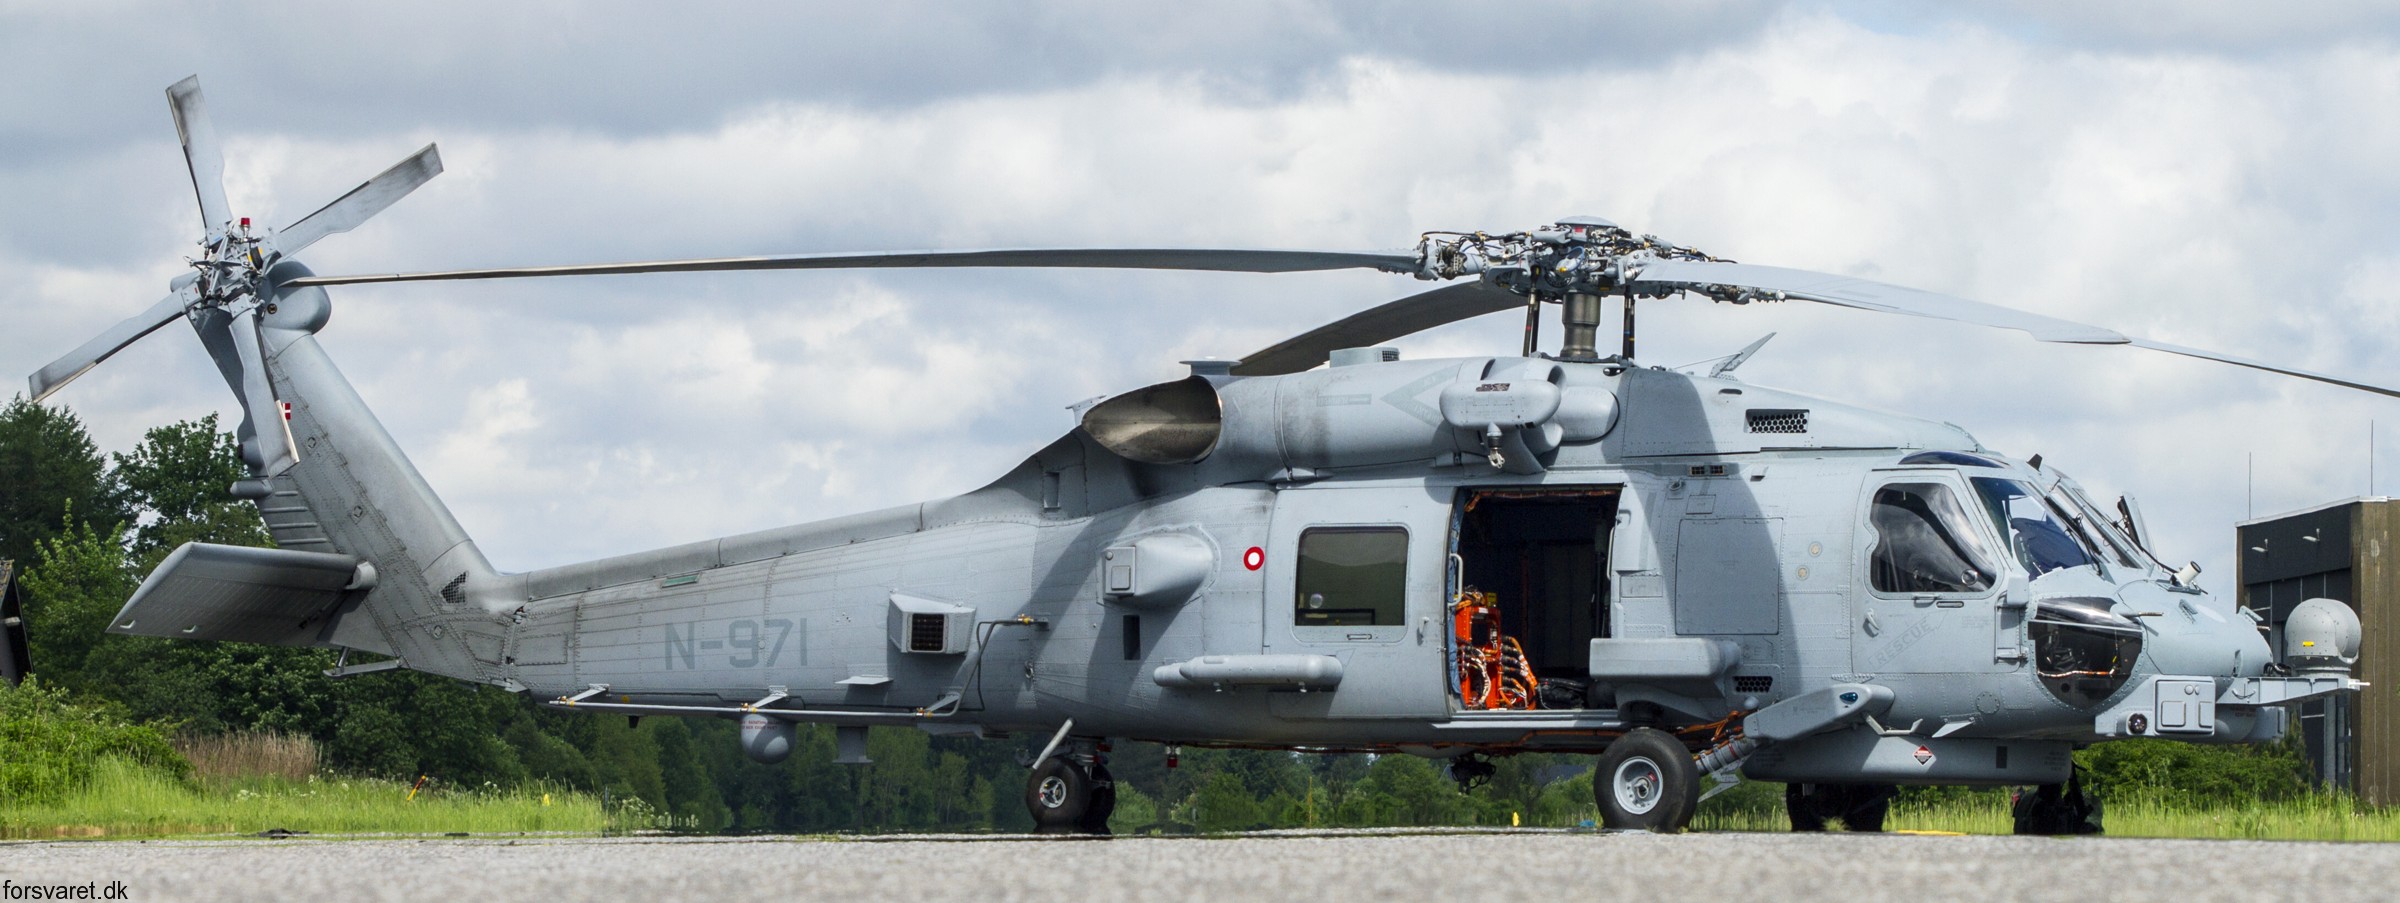 mh-60r seahawk royal danish navy air force flyvevåbnet kongelige danske marine sikorsky helicopter 723 eskadrille squadron karup 35